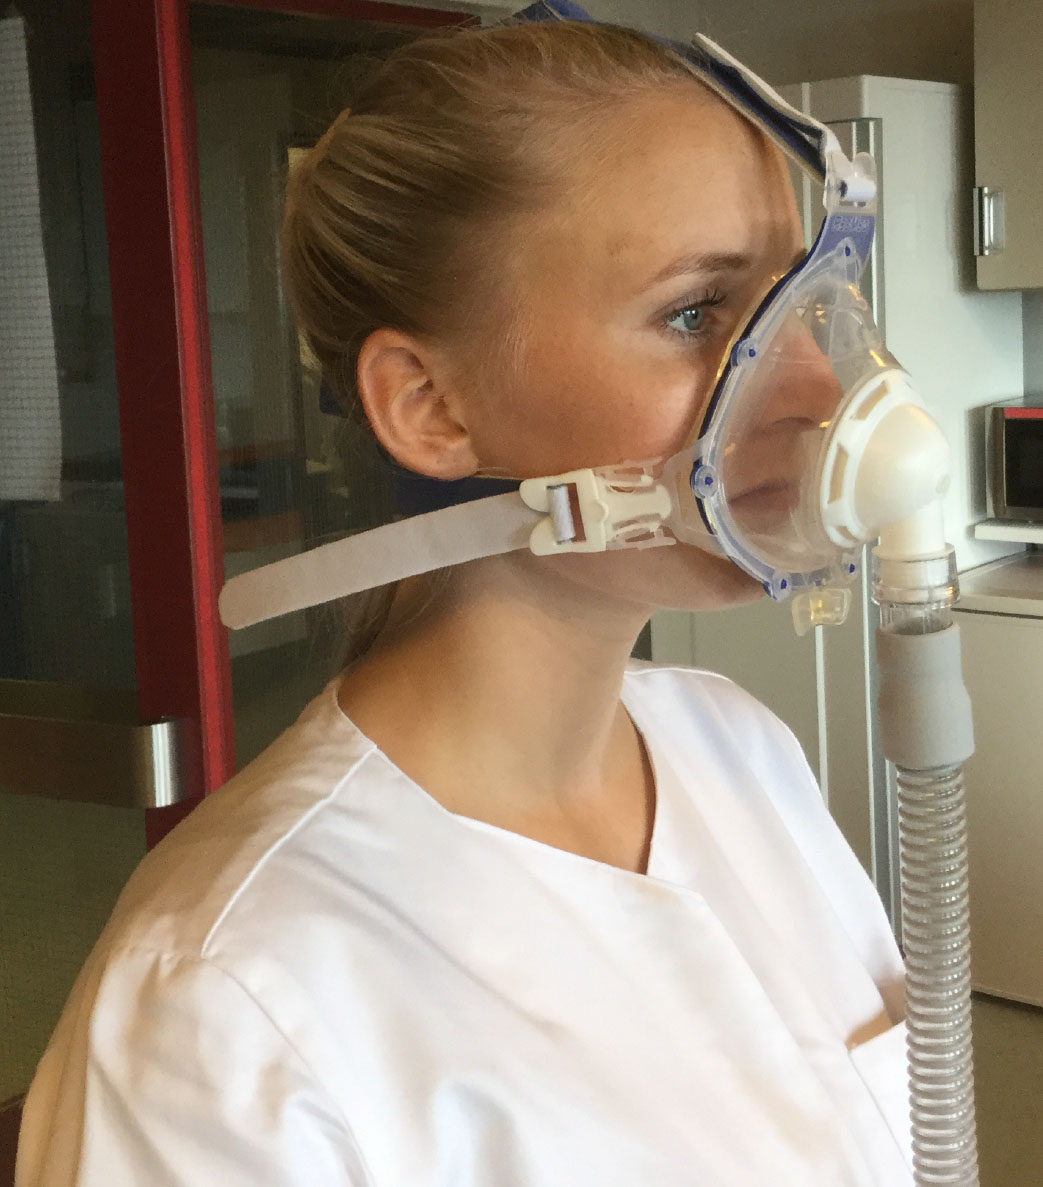 Ved NIV-behandling (Non Invasiv Behandling) får du en maske foran din næse og mund, og som spændes fast med remme henover hovedet og bagom nakken.